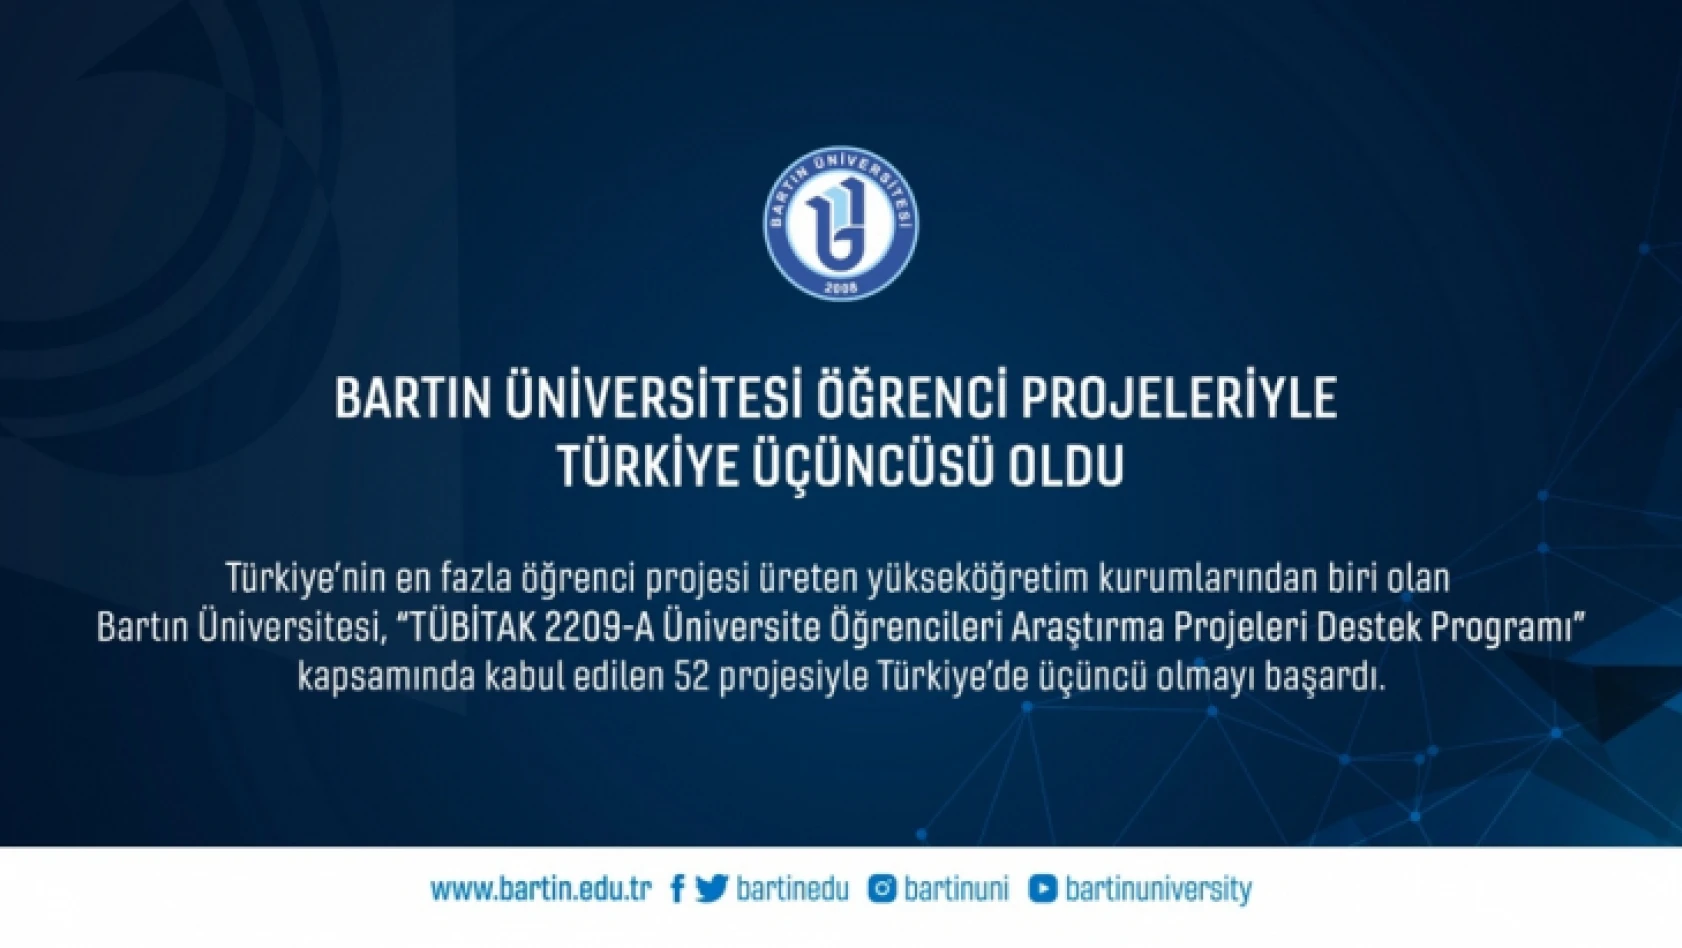 Bartın Üniversitesi, öğrenci projeleriyle Türkiye üçüncüsü oldu